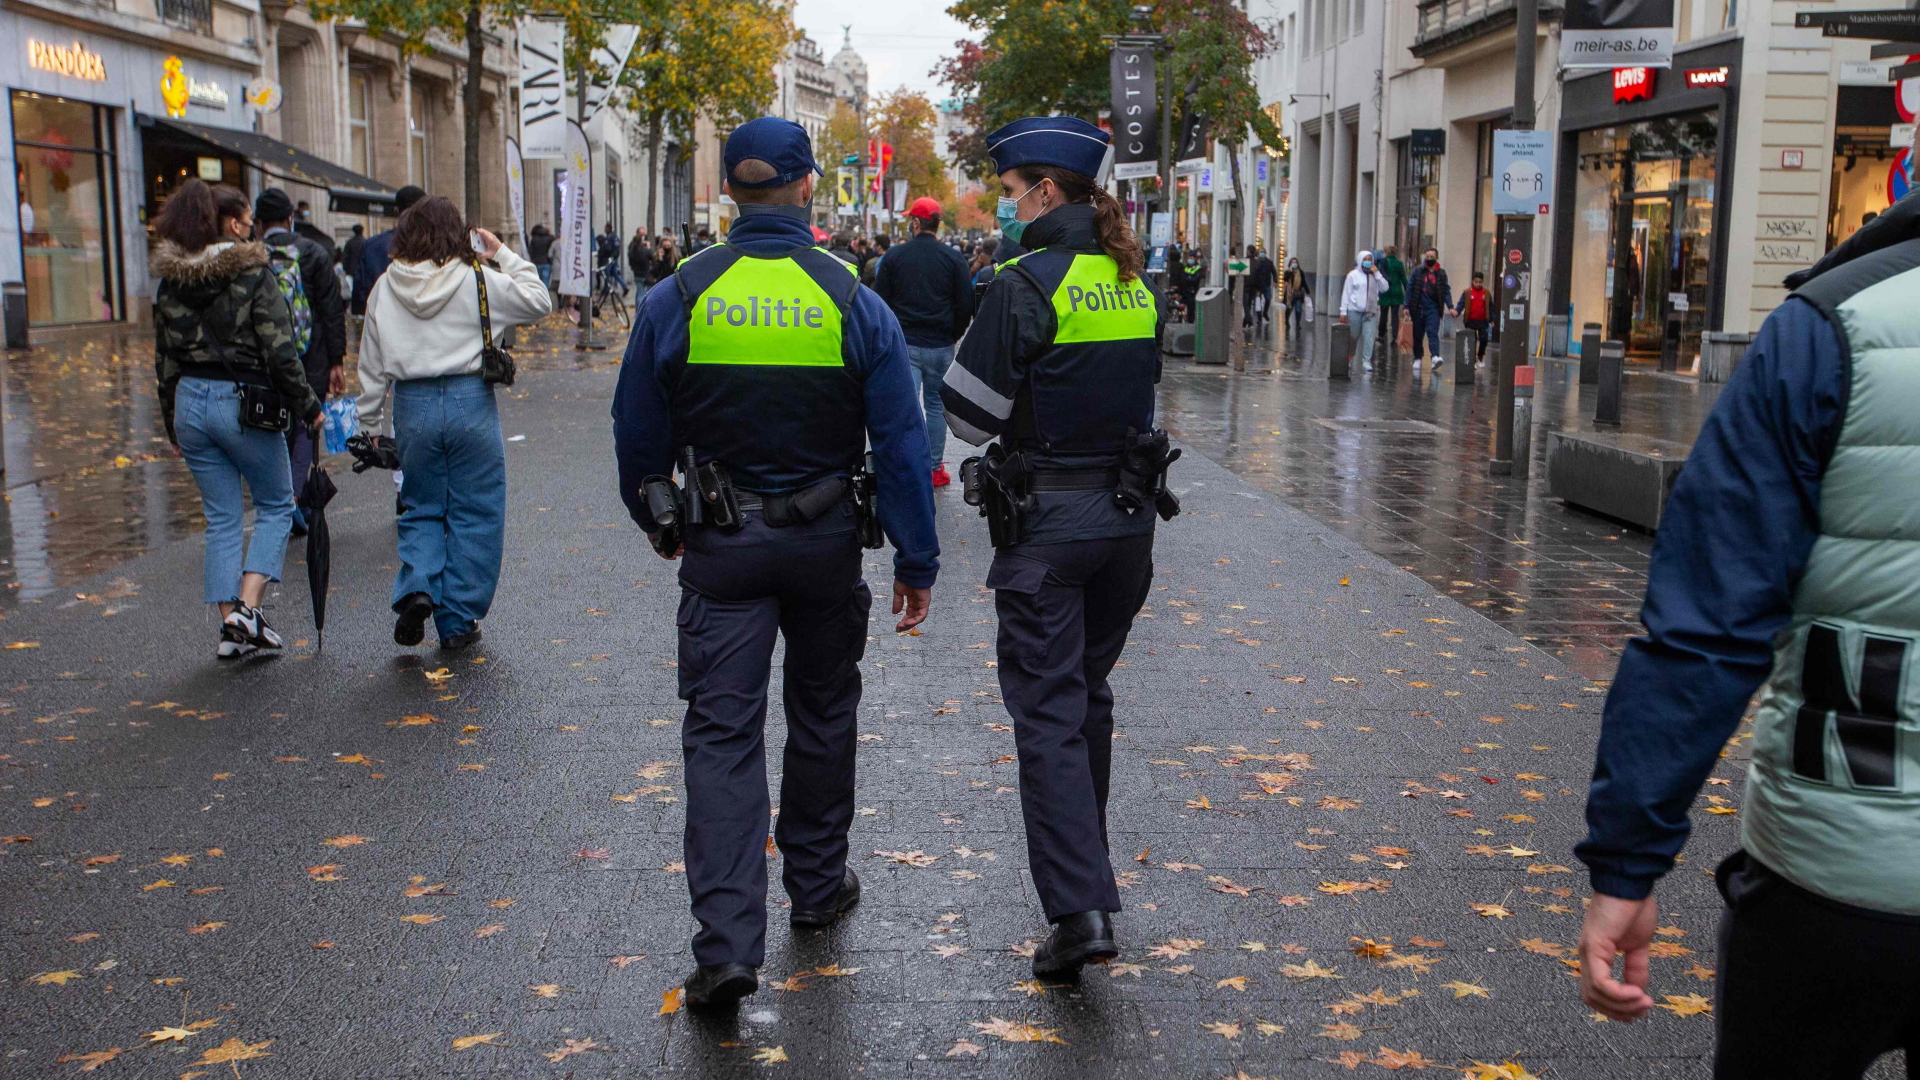 Polizisten auf Streife in der Innenstadt von Antwerpen| Bildquelle: AFP